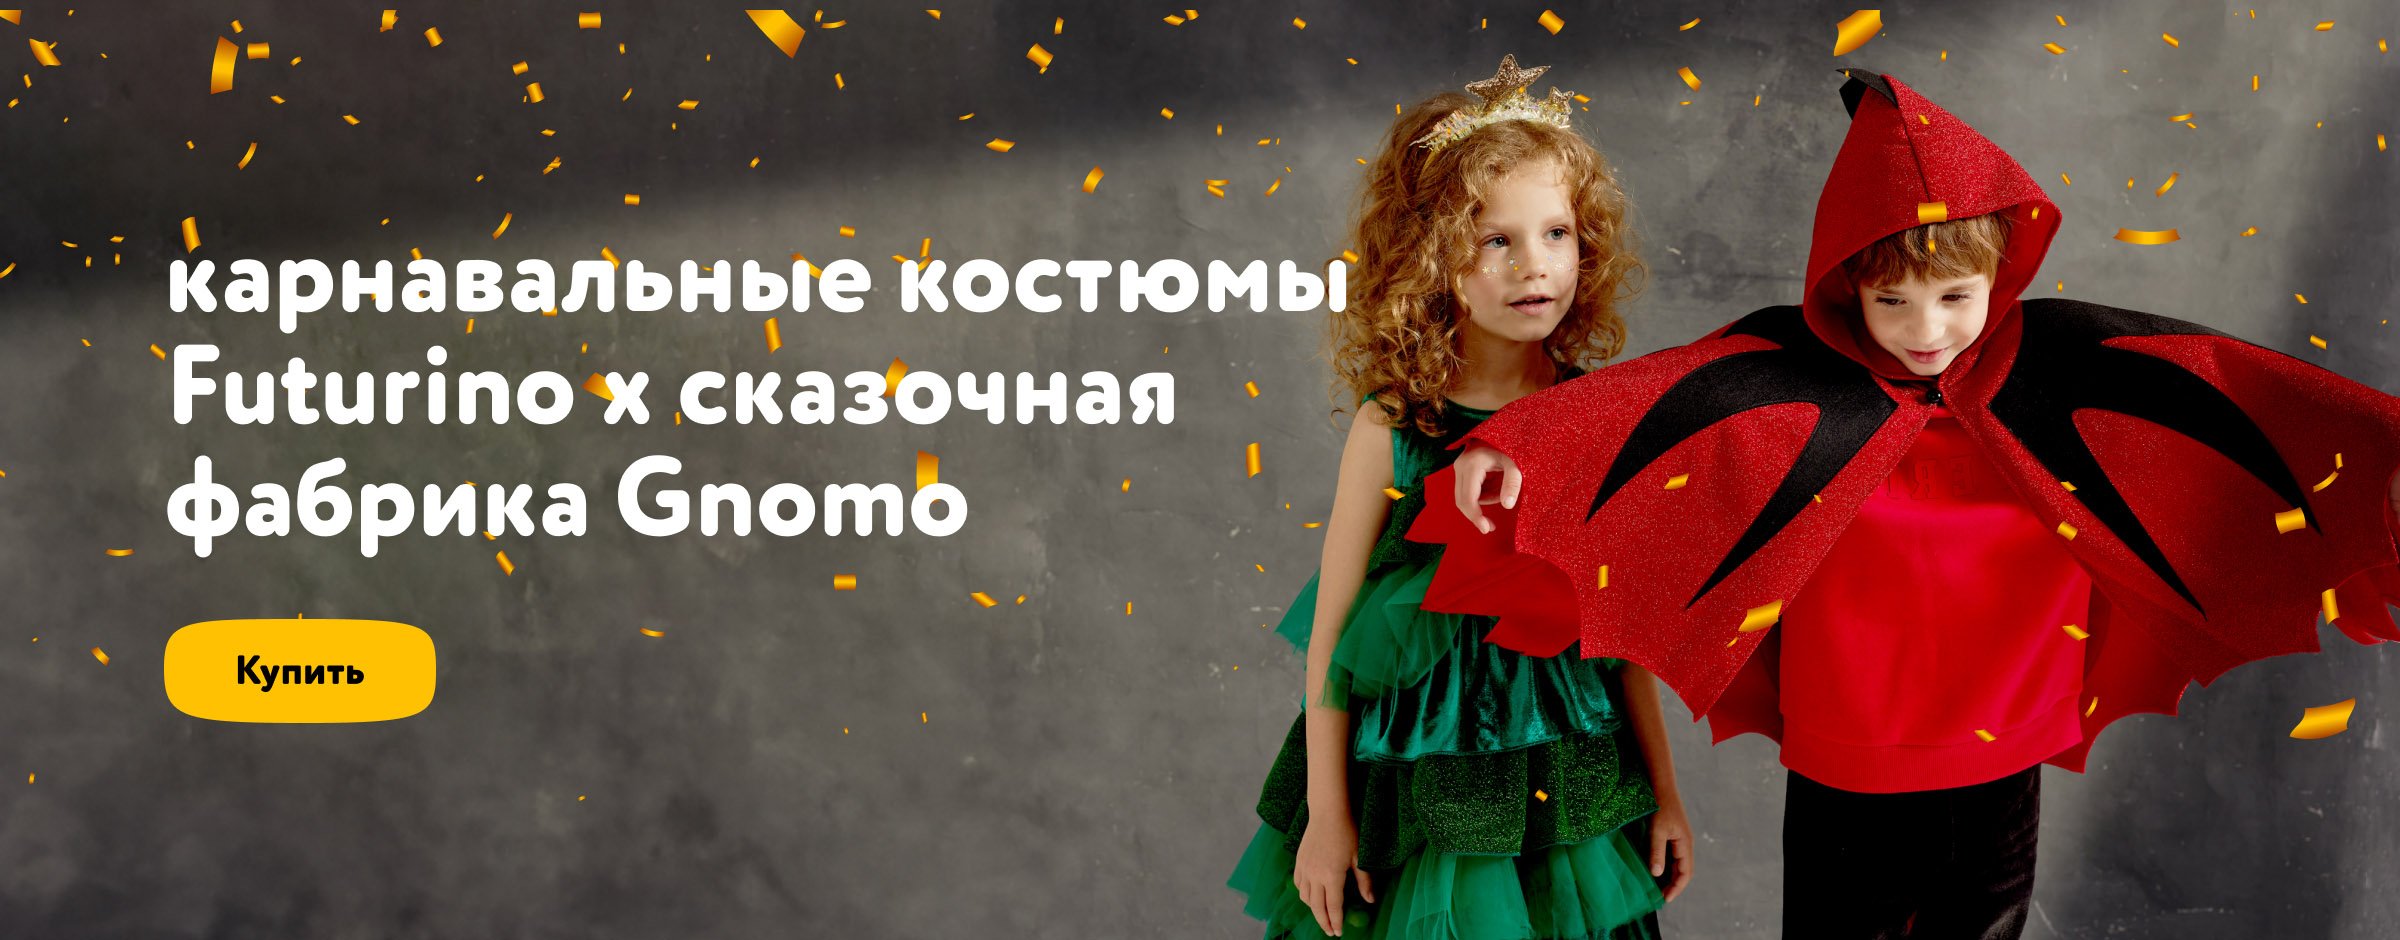 Карнавальные костюмы Futurino х Gnomo_категория подарки для детей 1 место